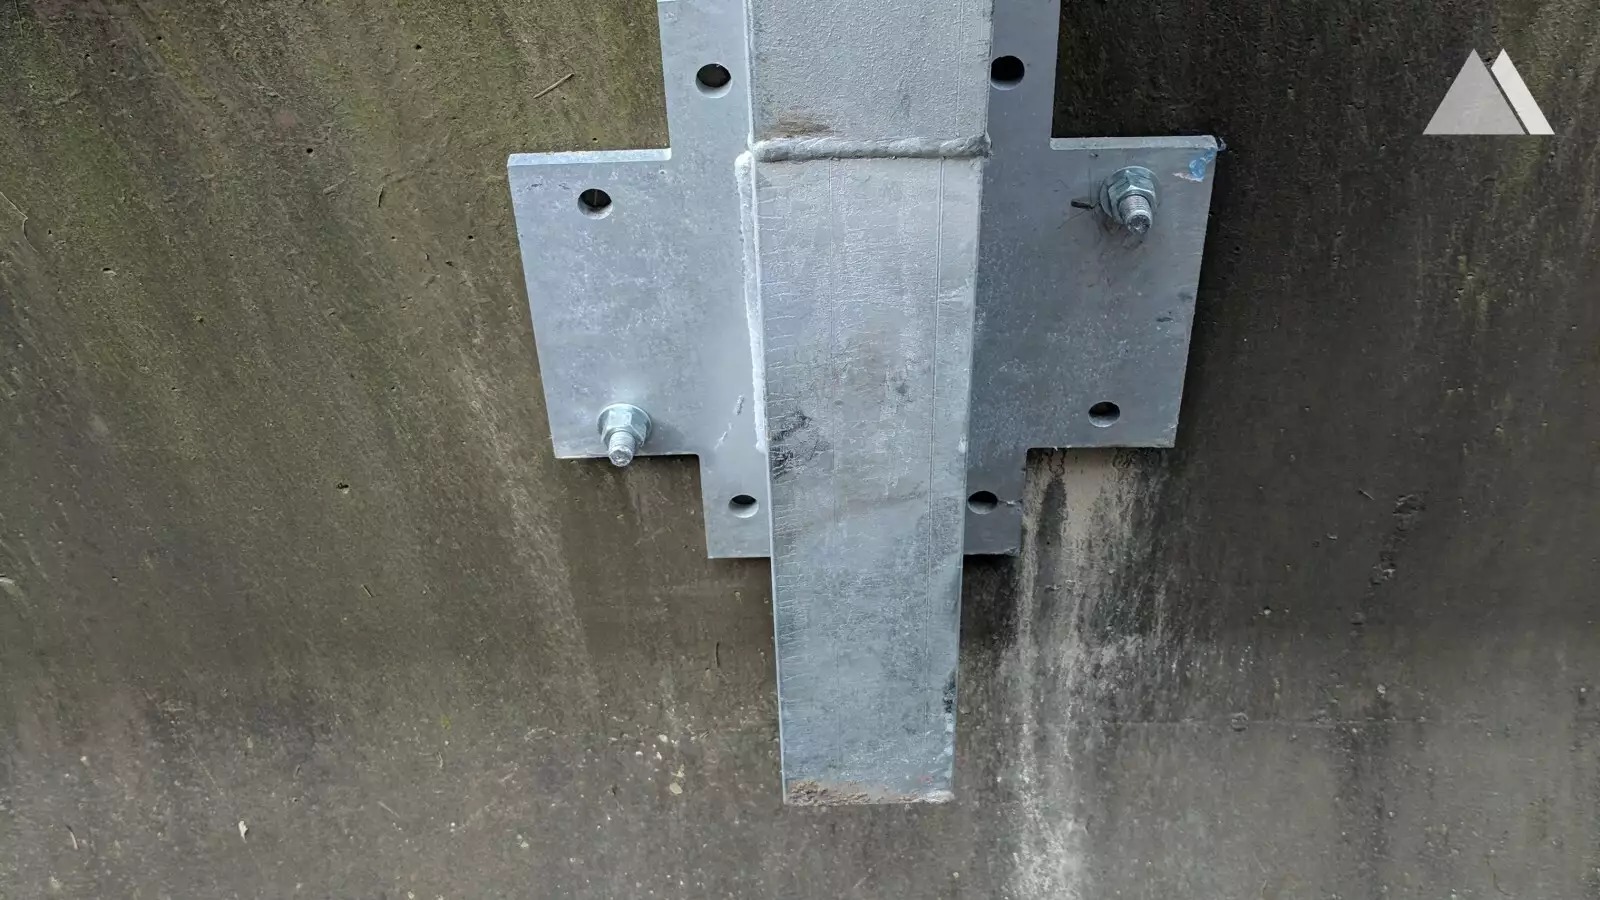 Protezione da caduta massi - Moffet Creek, Oregon, T35 barrier on concrete guardrail 2018